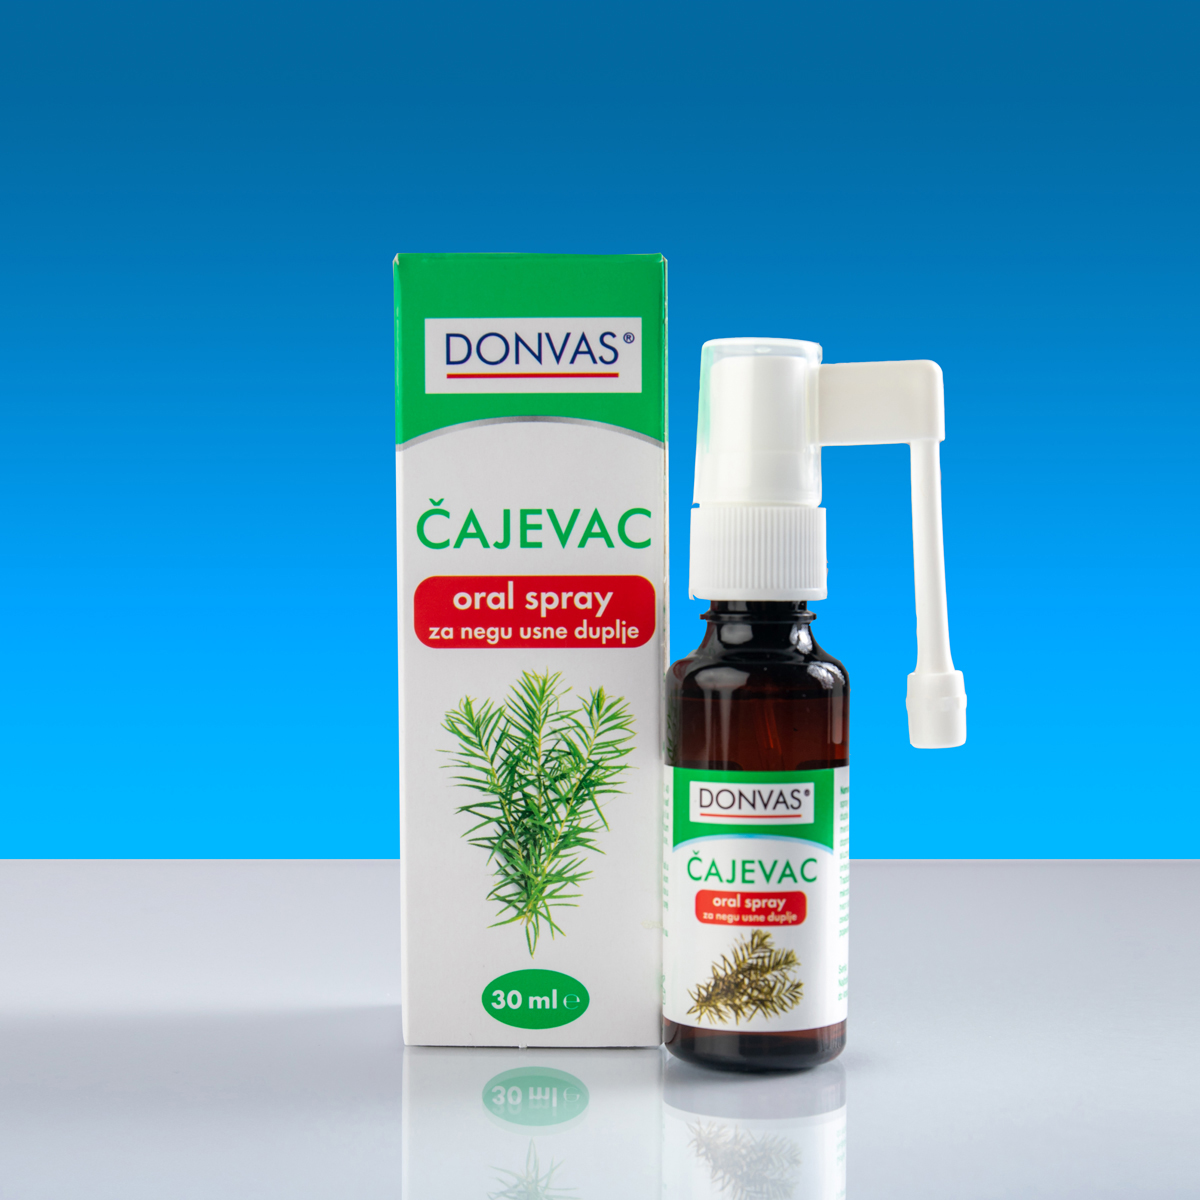 DONVAS® ČAJEVAC oral spray, 30 ml